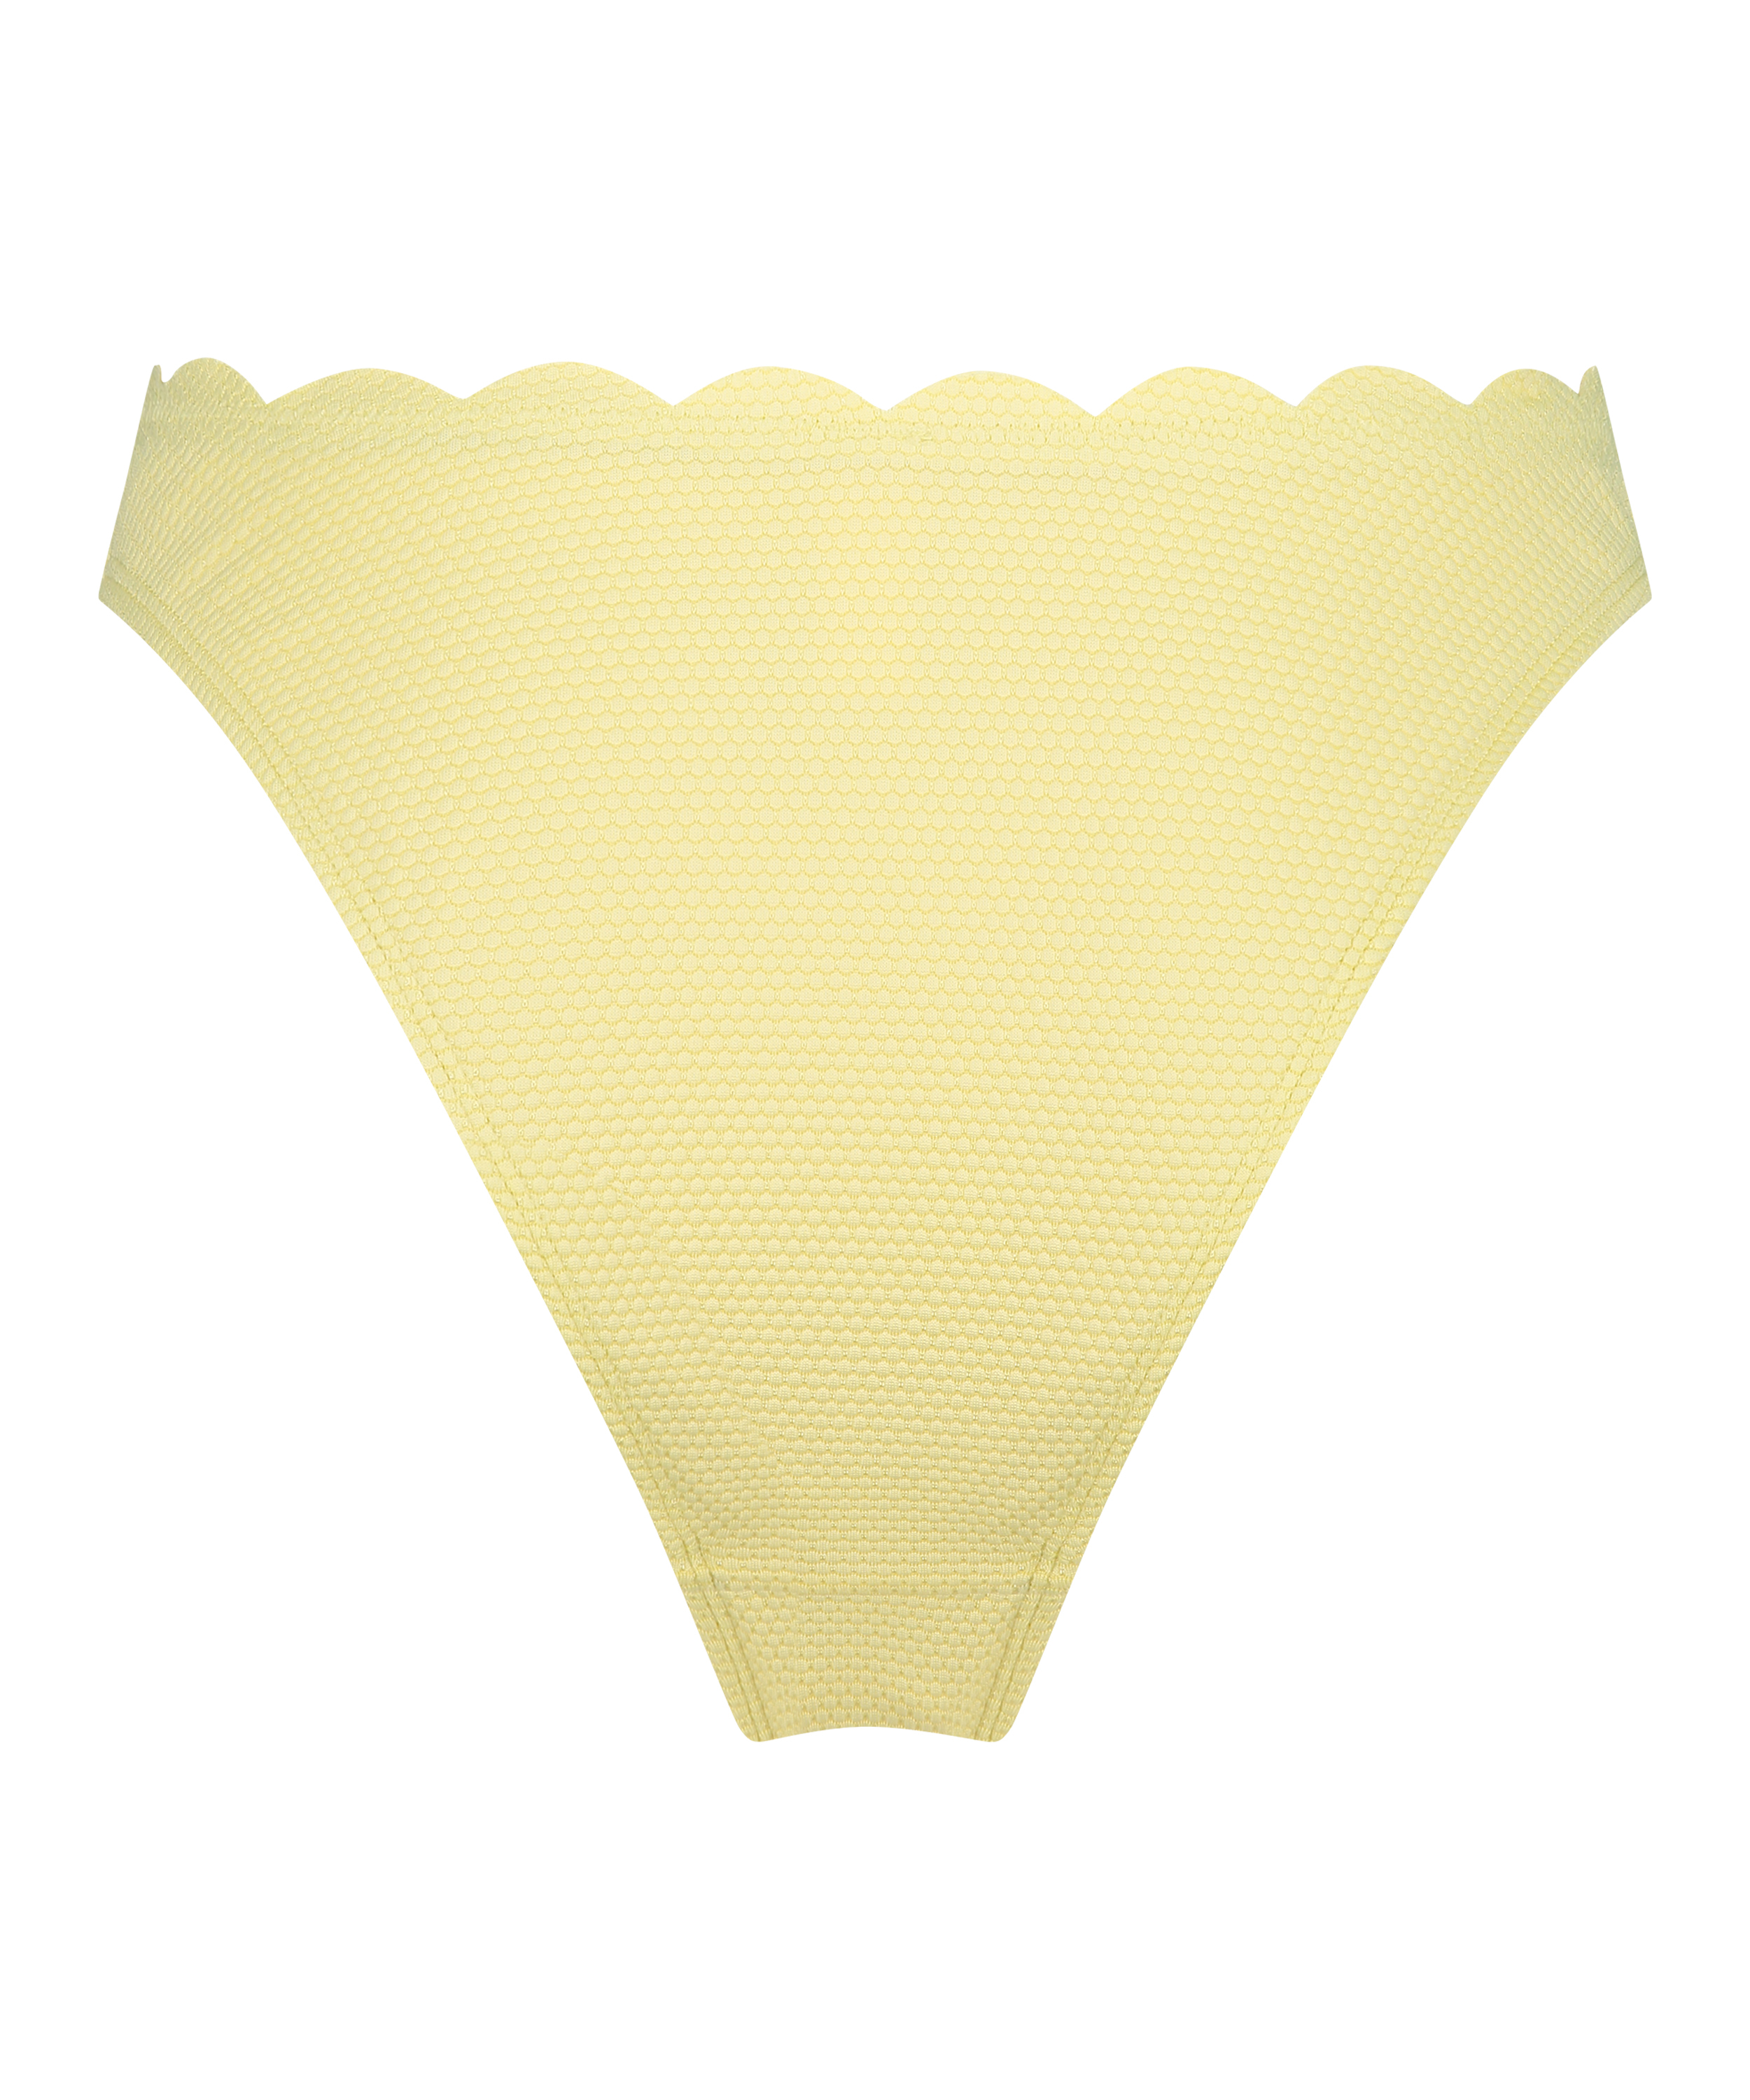 Scallop High-Leg Bikini Bottoms, Yellow, main